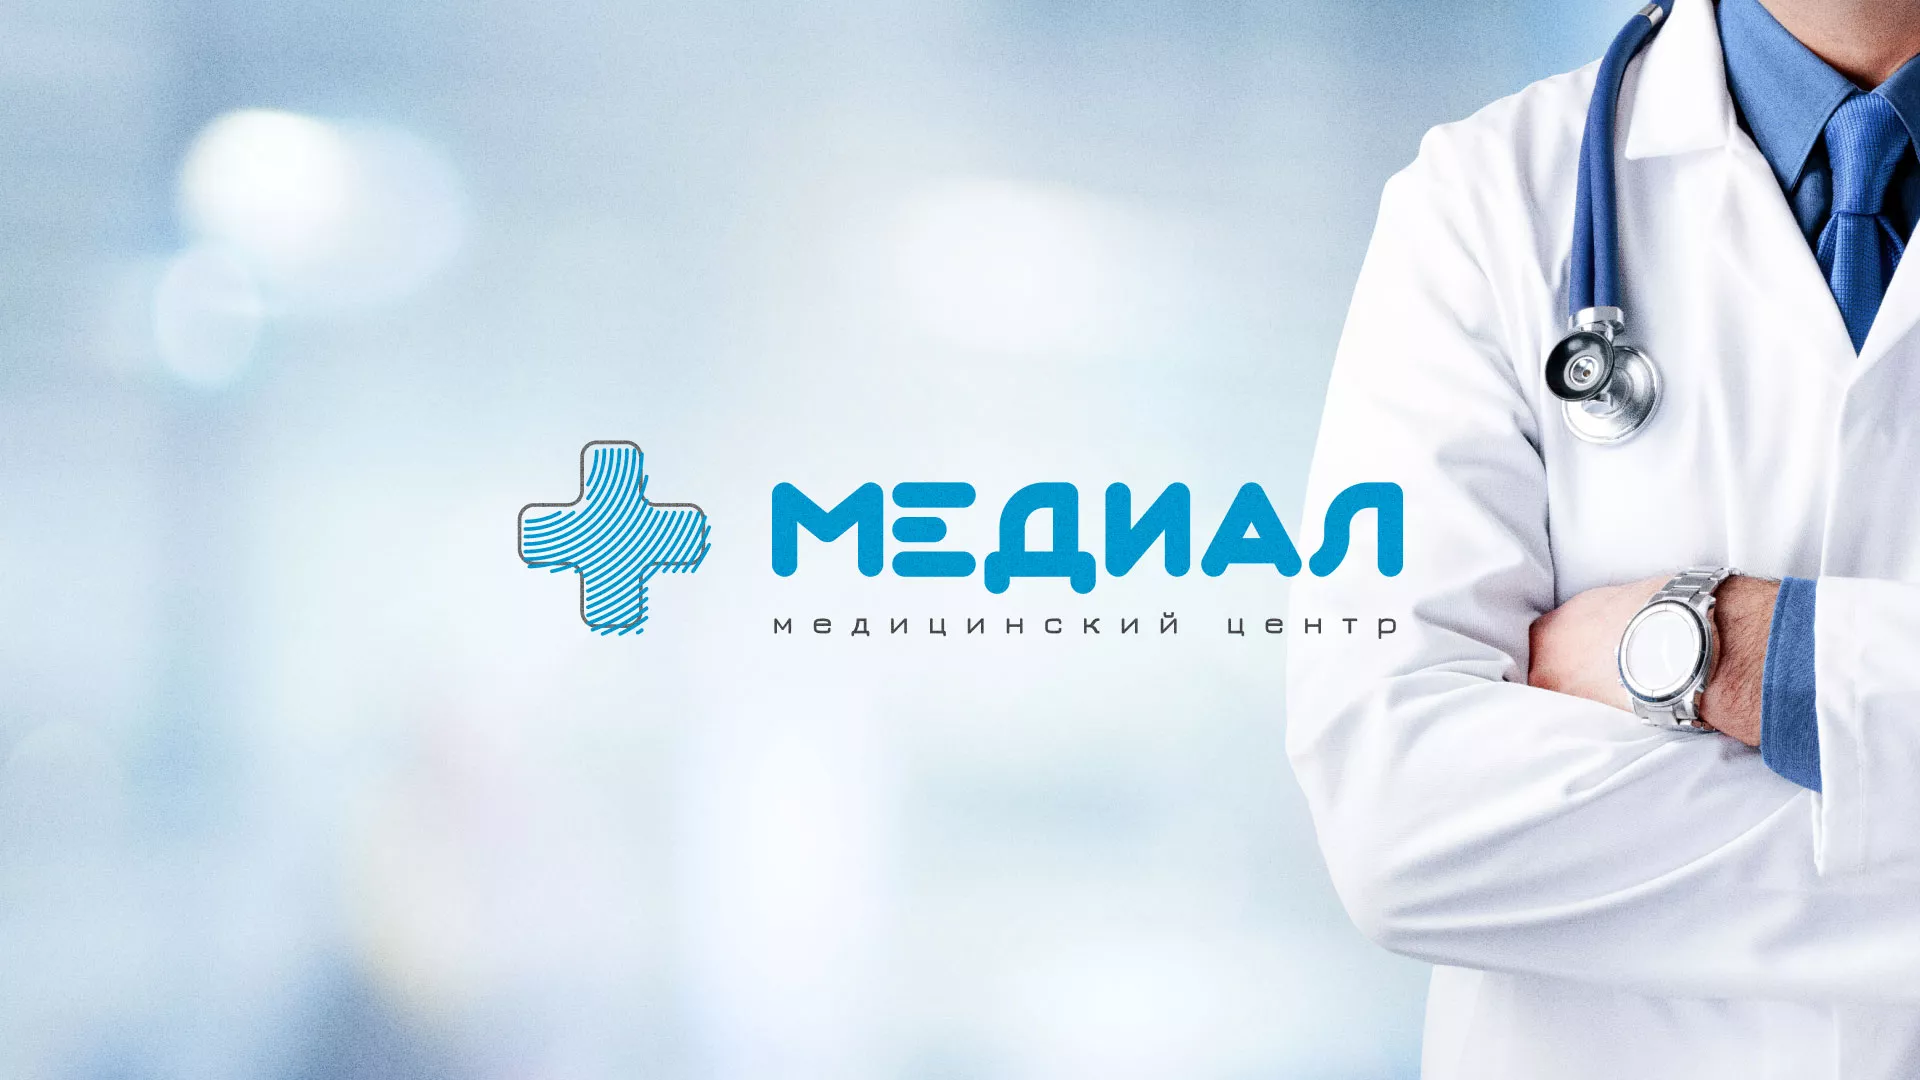 Создание сайта для медицинского центра «Медиал» в Гремячинске